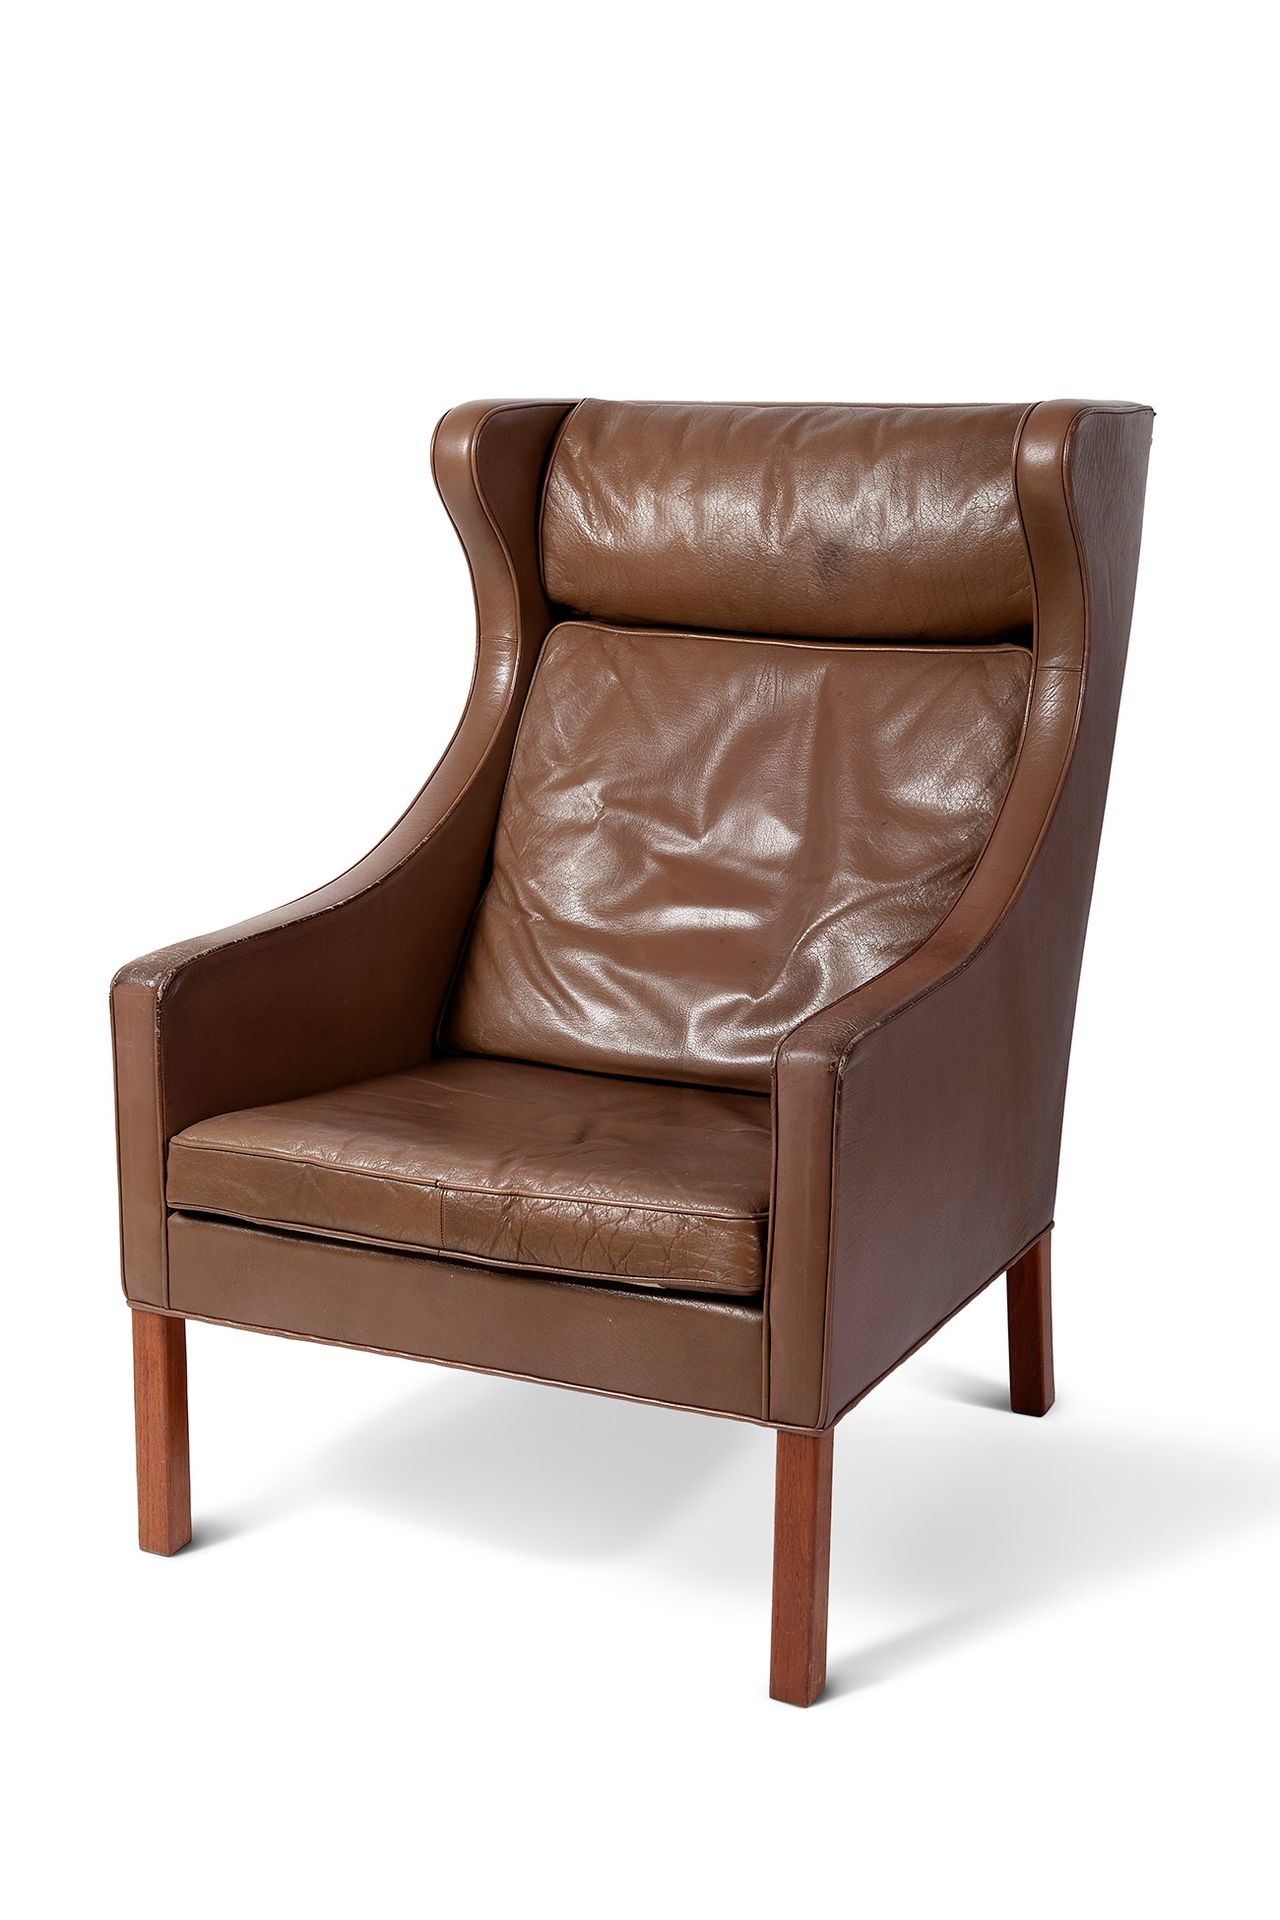 Danish design armchair, 60s-70s. Fauteuil de design danois, années 60-70.
Bois e&hellip;